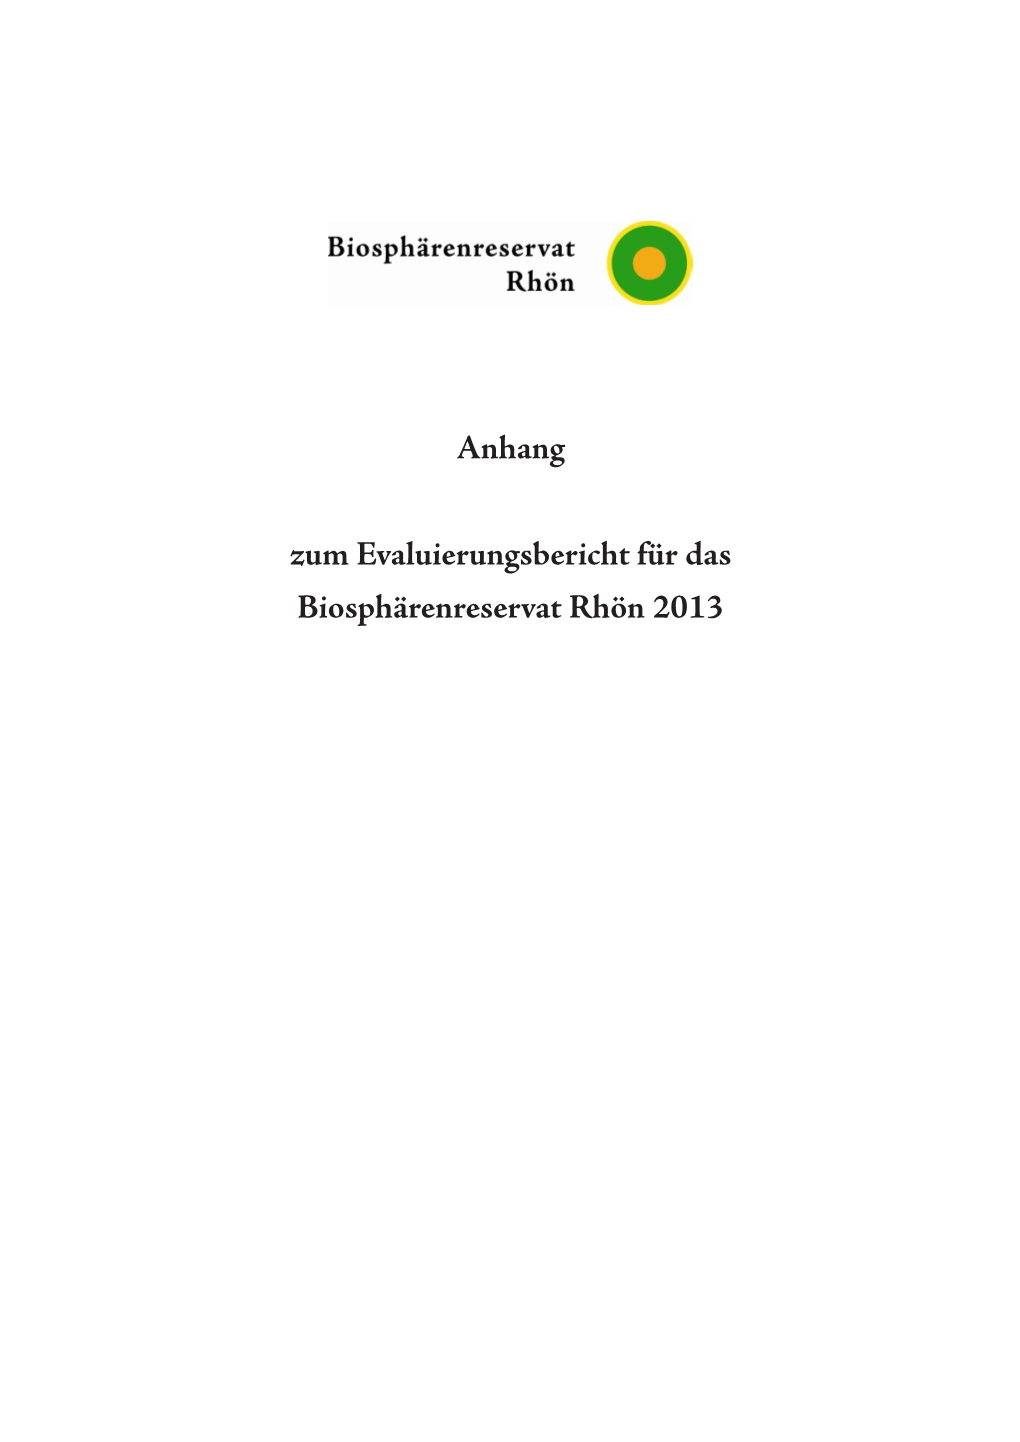 Anhang Zum Evaluierungsbericht Für Das Biosphärenreservat Rhön 2013 Anhang 1: Übersichtskarte Zur Lage Des Biosphärenreservats Rhön in Deutschland